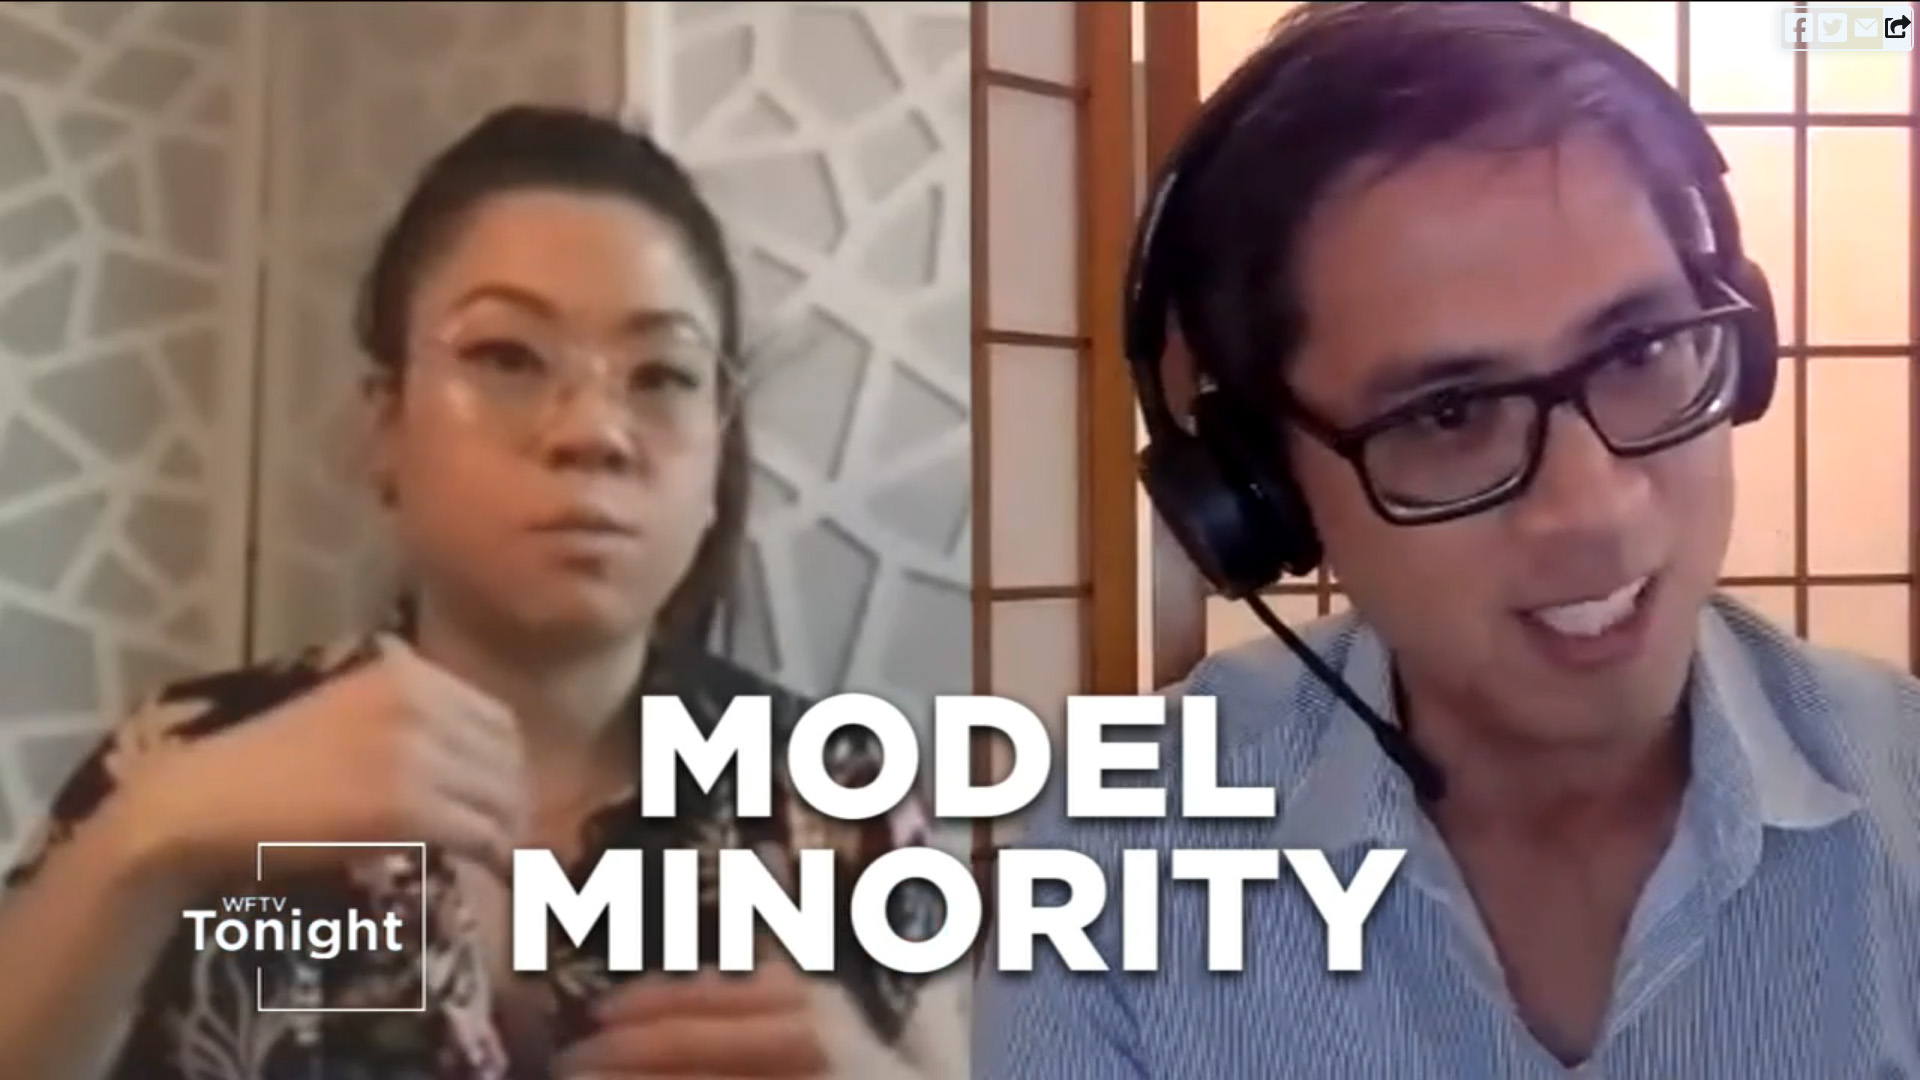 Model Minority